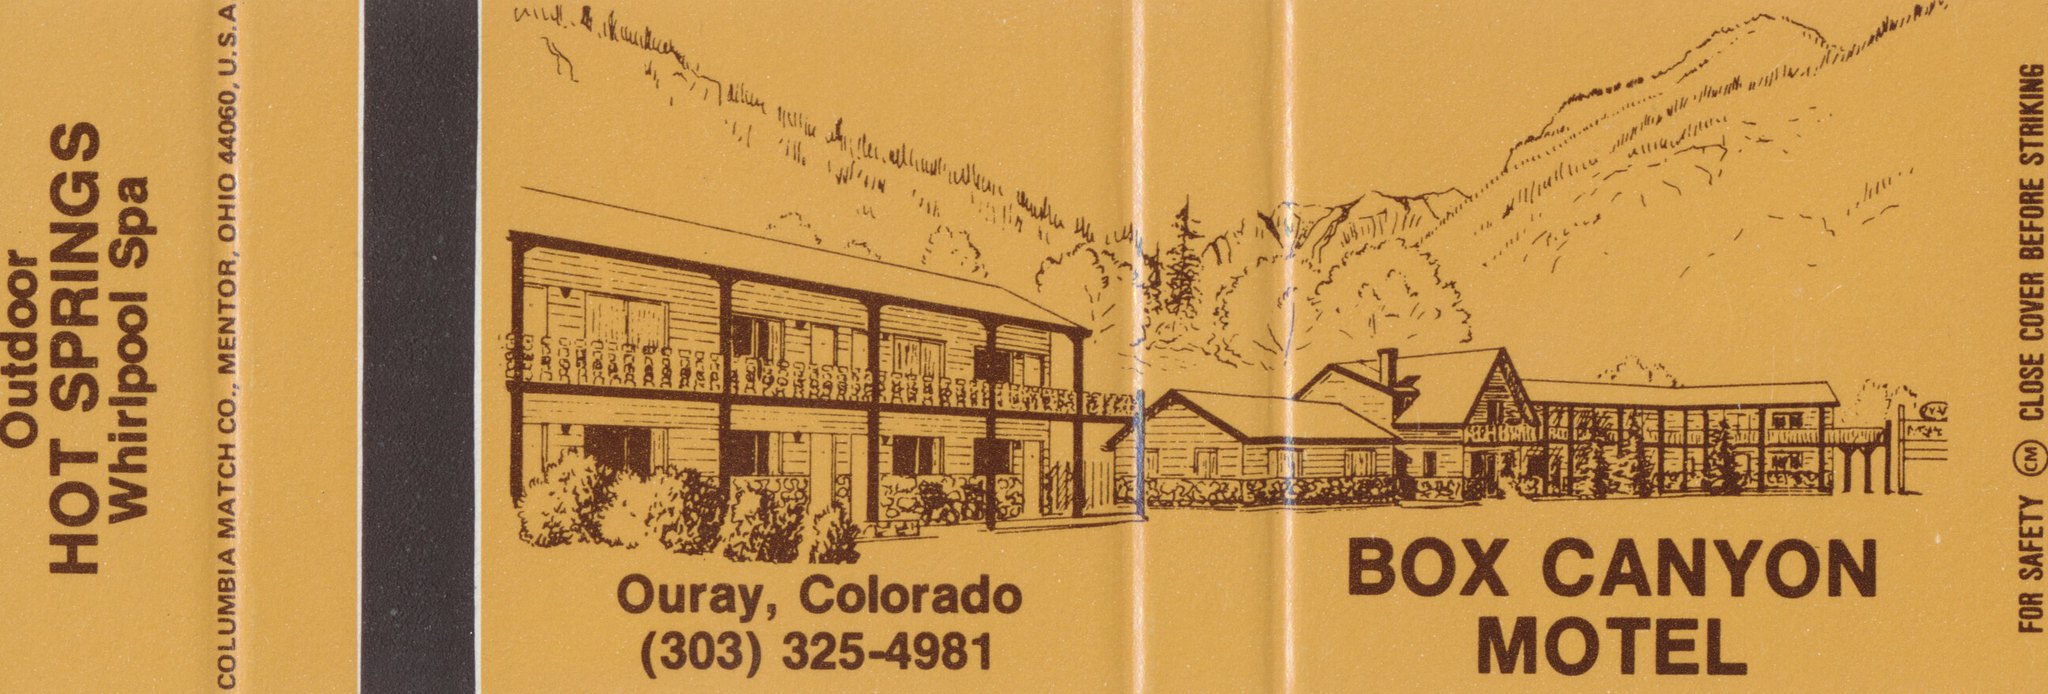 Box Canyon Motel - Ouray, Colorado